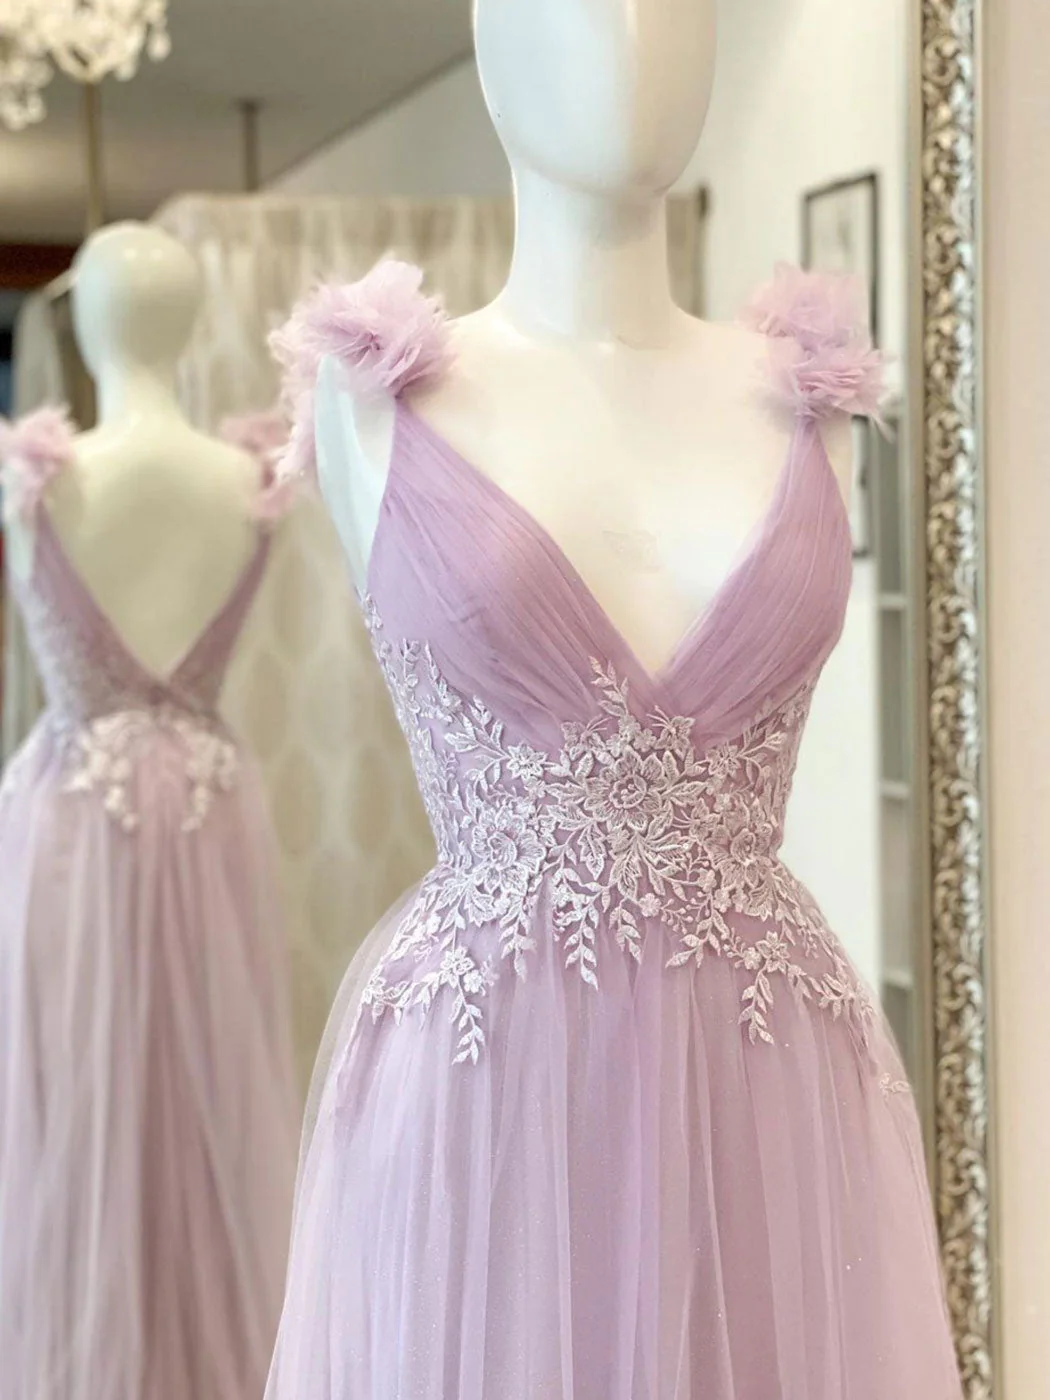 Aline V Neck Pink Long Prom Dresses, Pink Lace Long Formal Graduation Dresses nv834